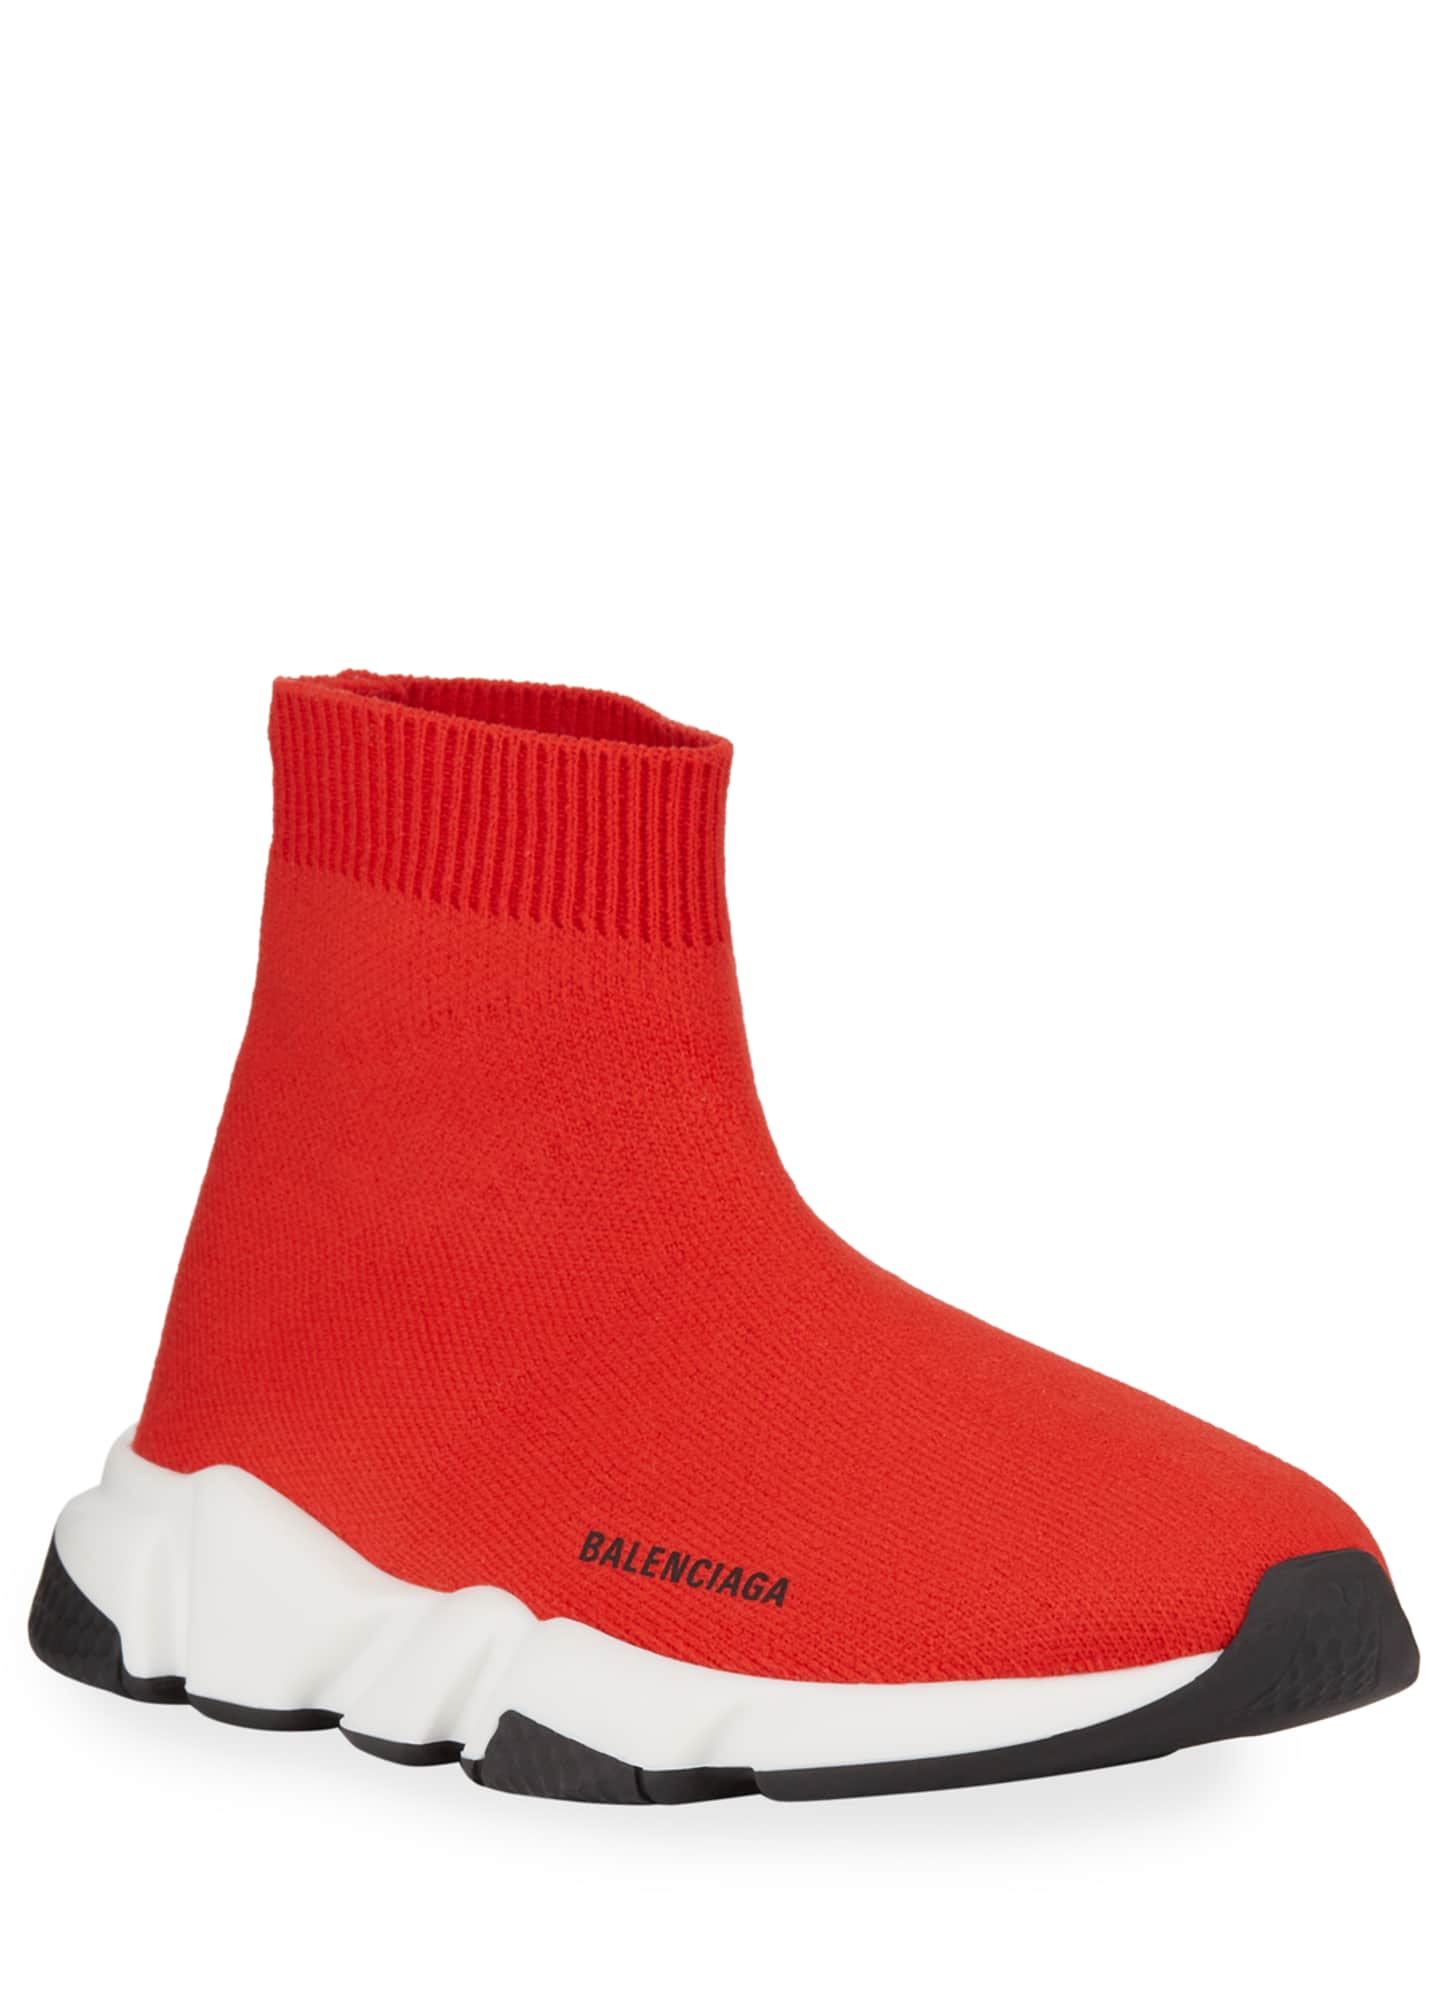 Balenciaga Speed Sock Sneakers, Toddler/Kids, Red/White - Bergdorf Goodman